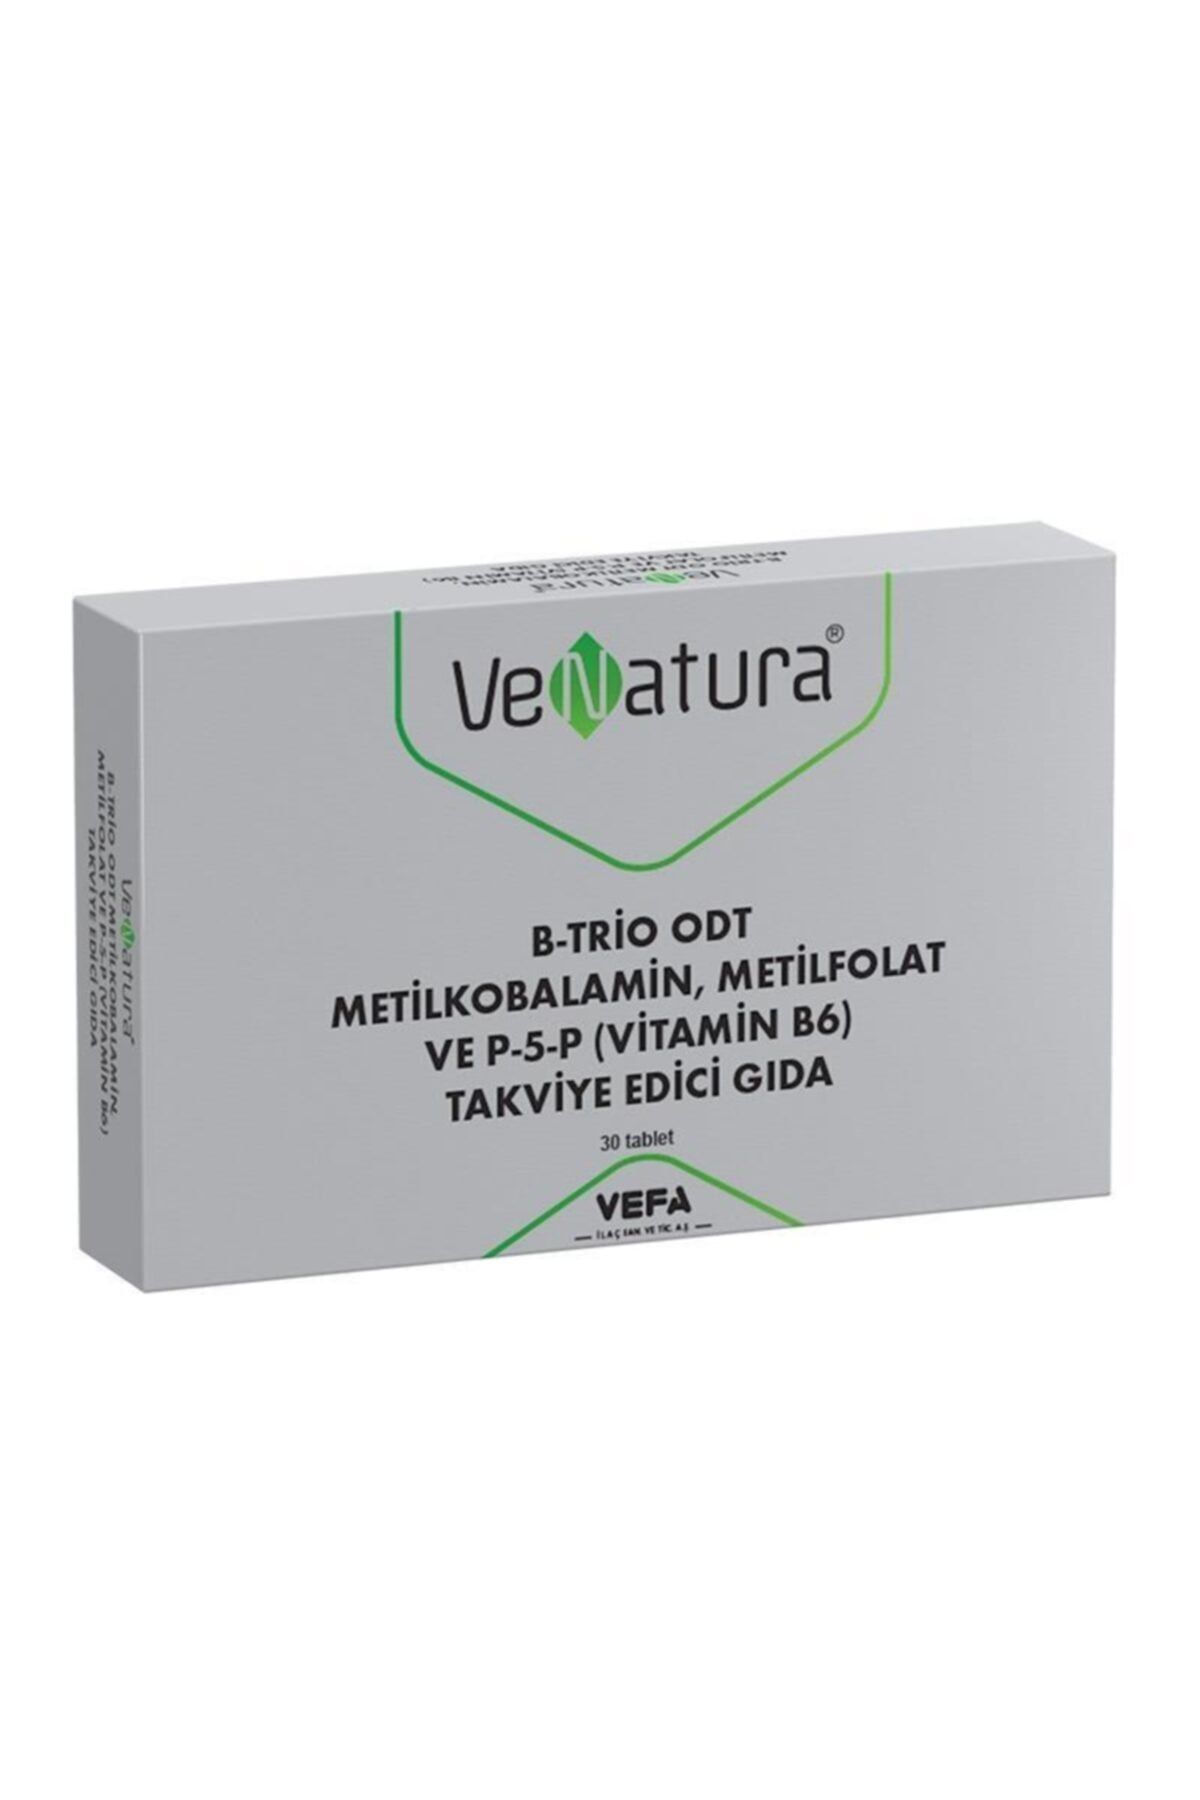 Venatura B-trio Odt Metilkobalamin, Metilfolat Ve P-5-p Takviye Edici Gıda 30 Tablet